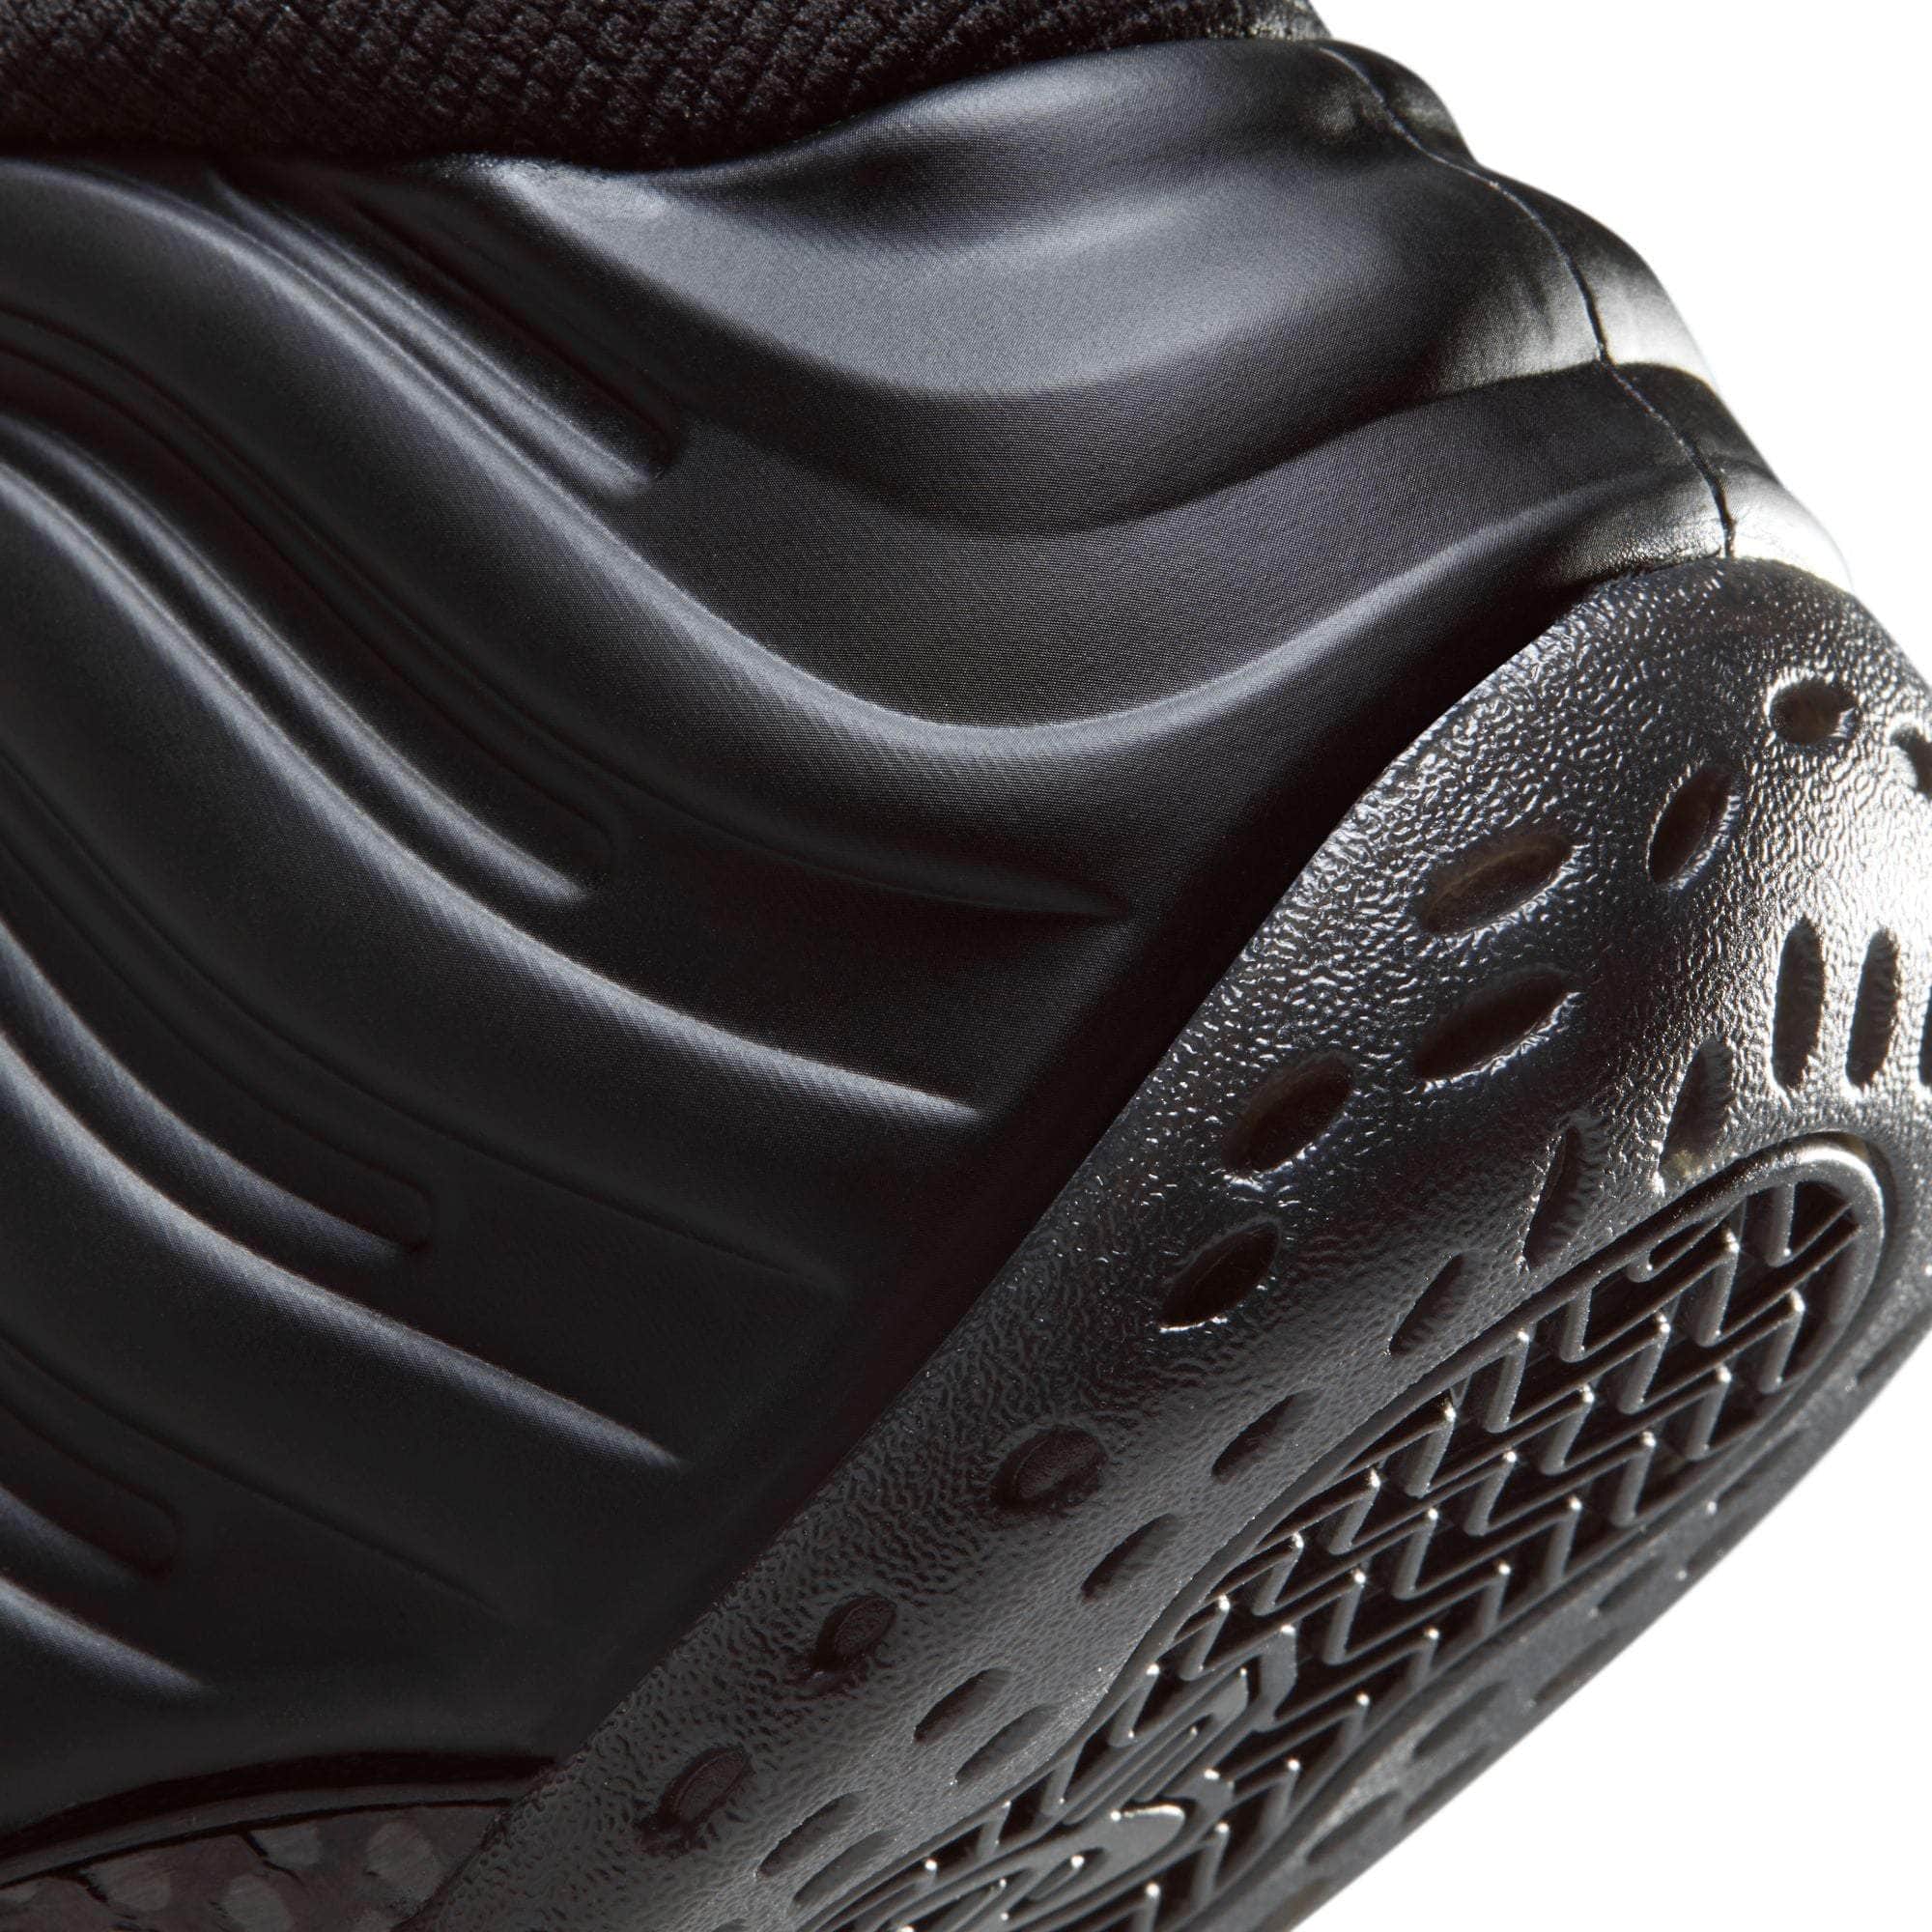 Nike Footwear Nike Air Foamposite One 'Anthracite' - Men's